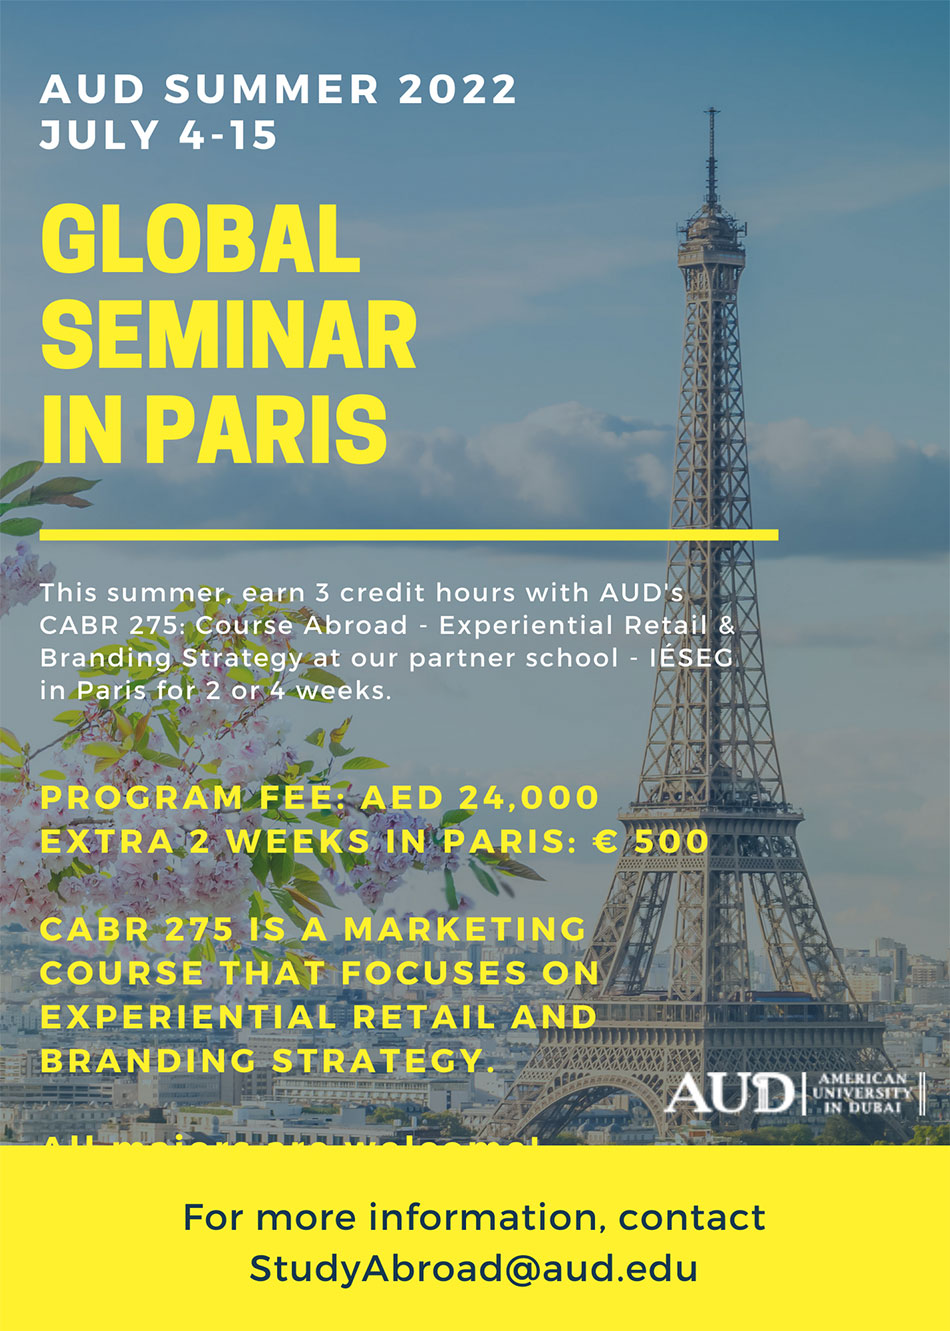 Summer 2022 AUD Global Seminar in Paris